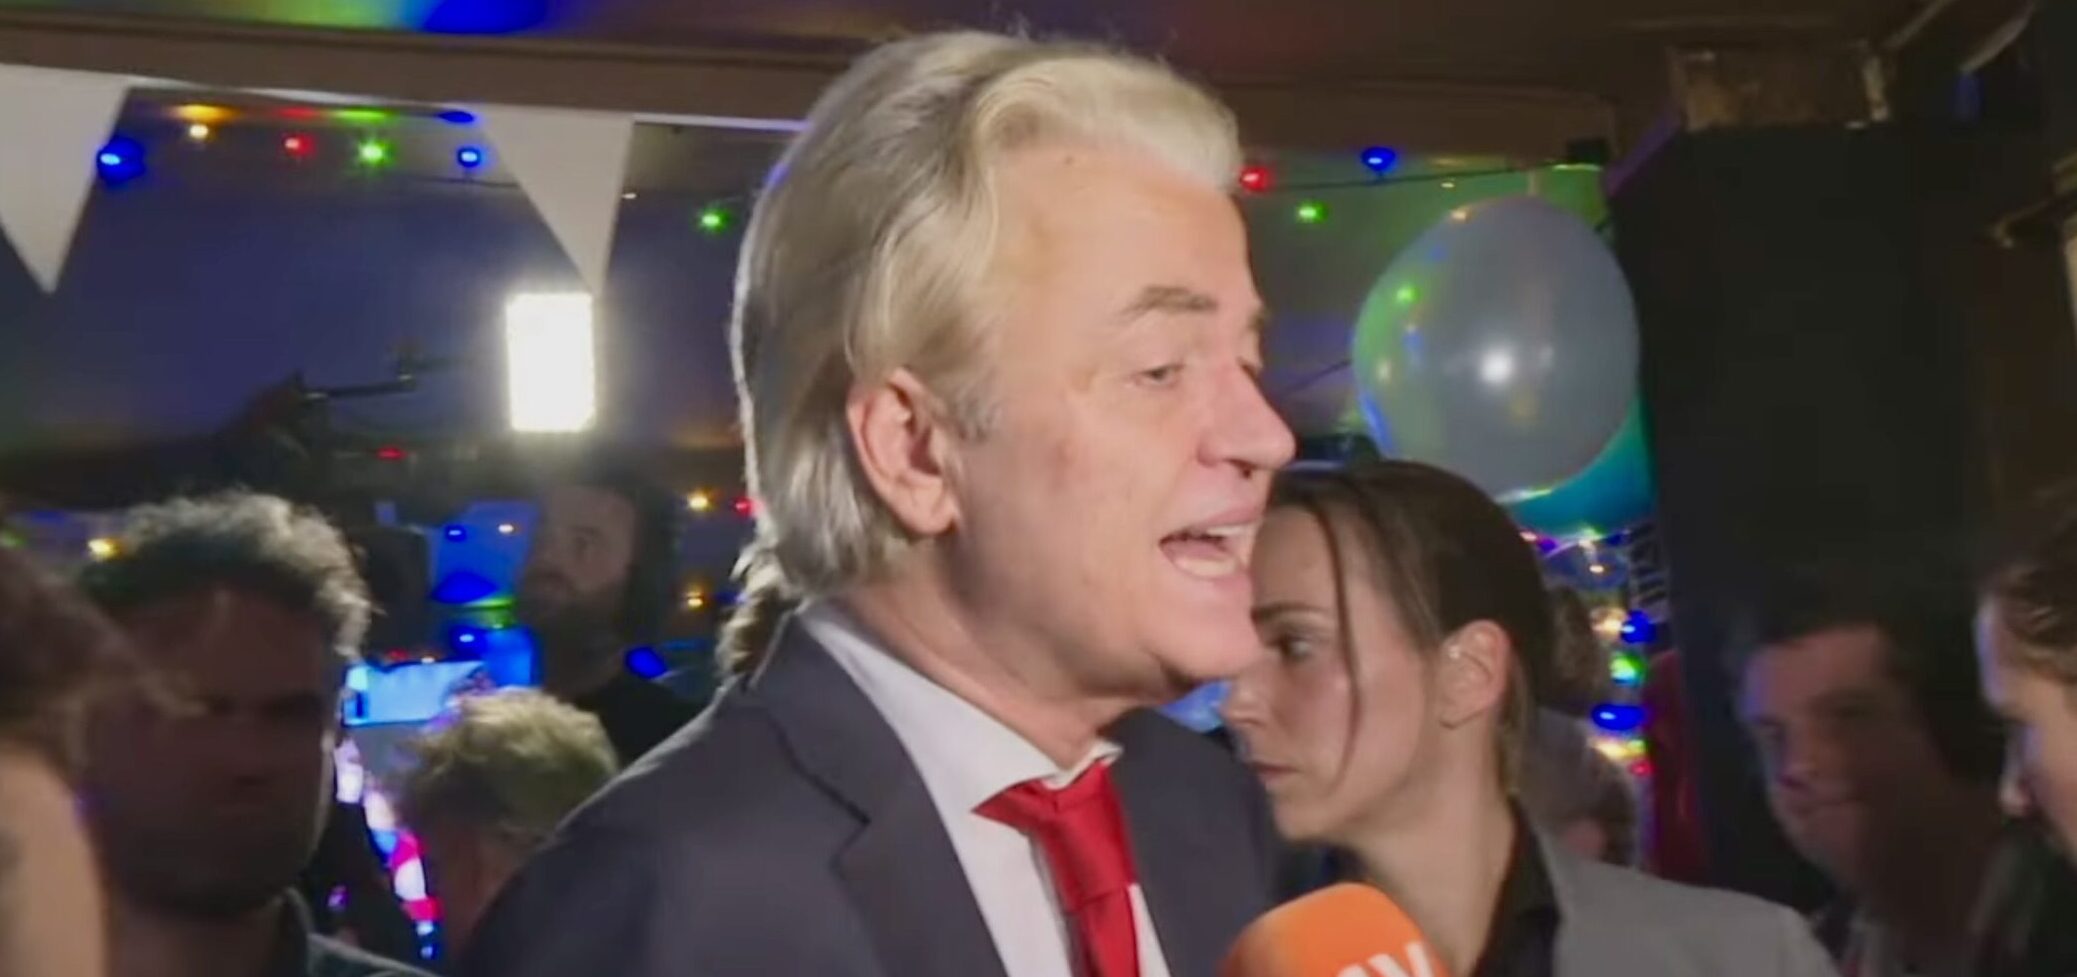 El ultraderechista Partido de la Libertad gana las elecciones de Países Bajos con el 98% escrutado